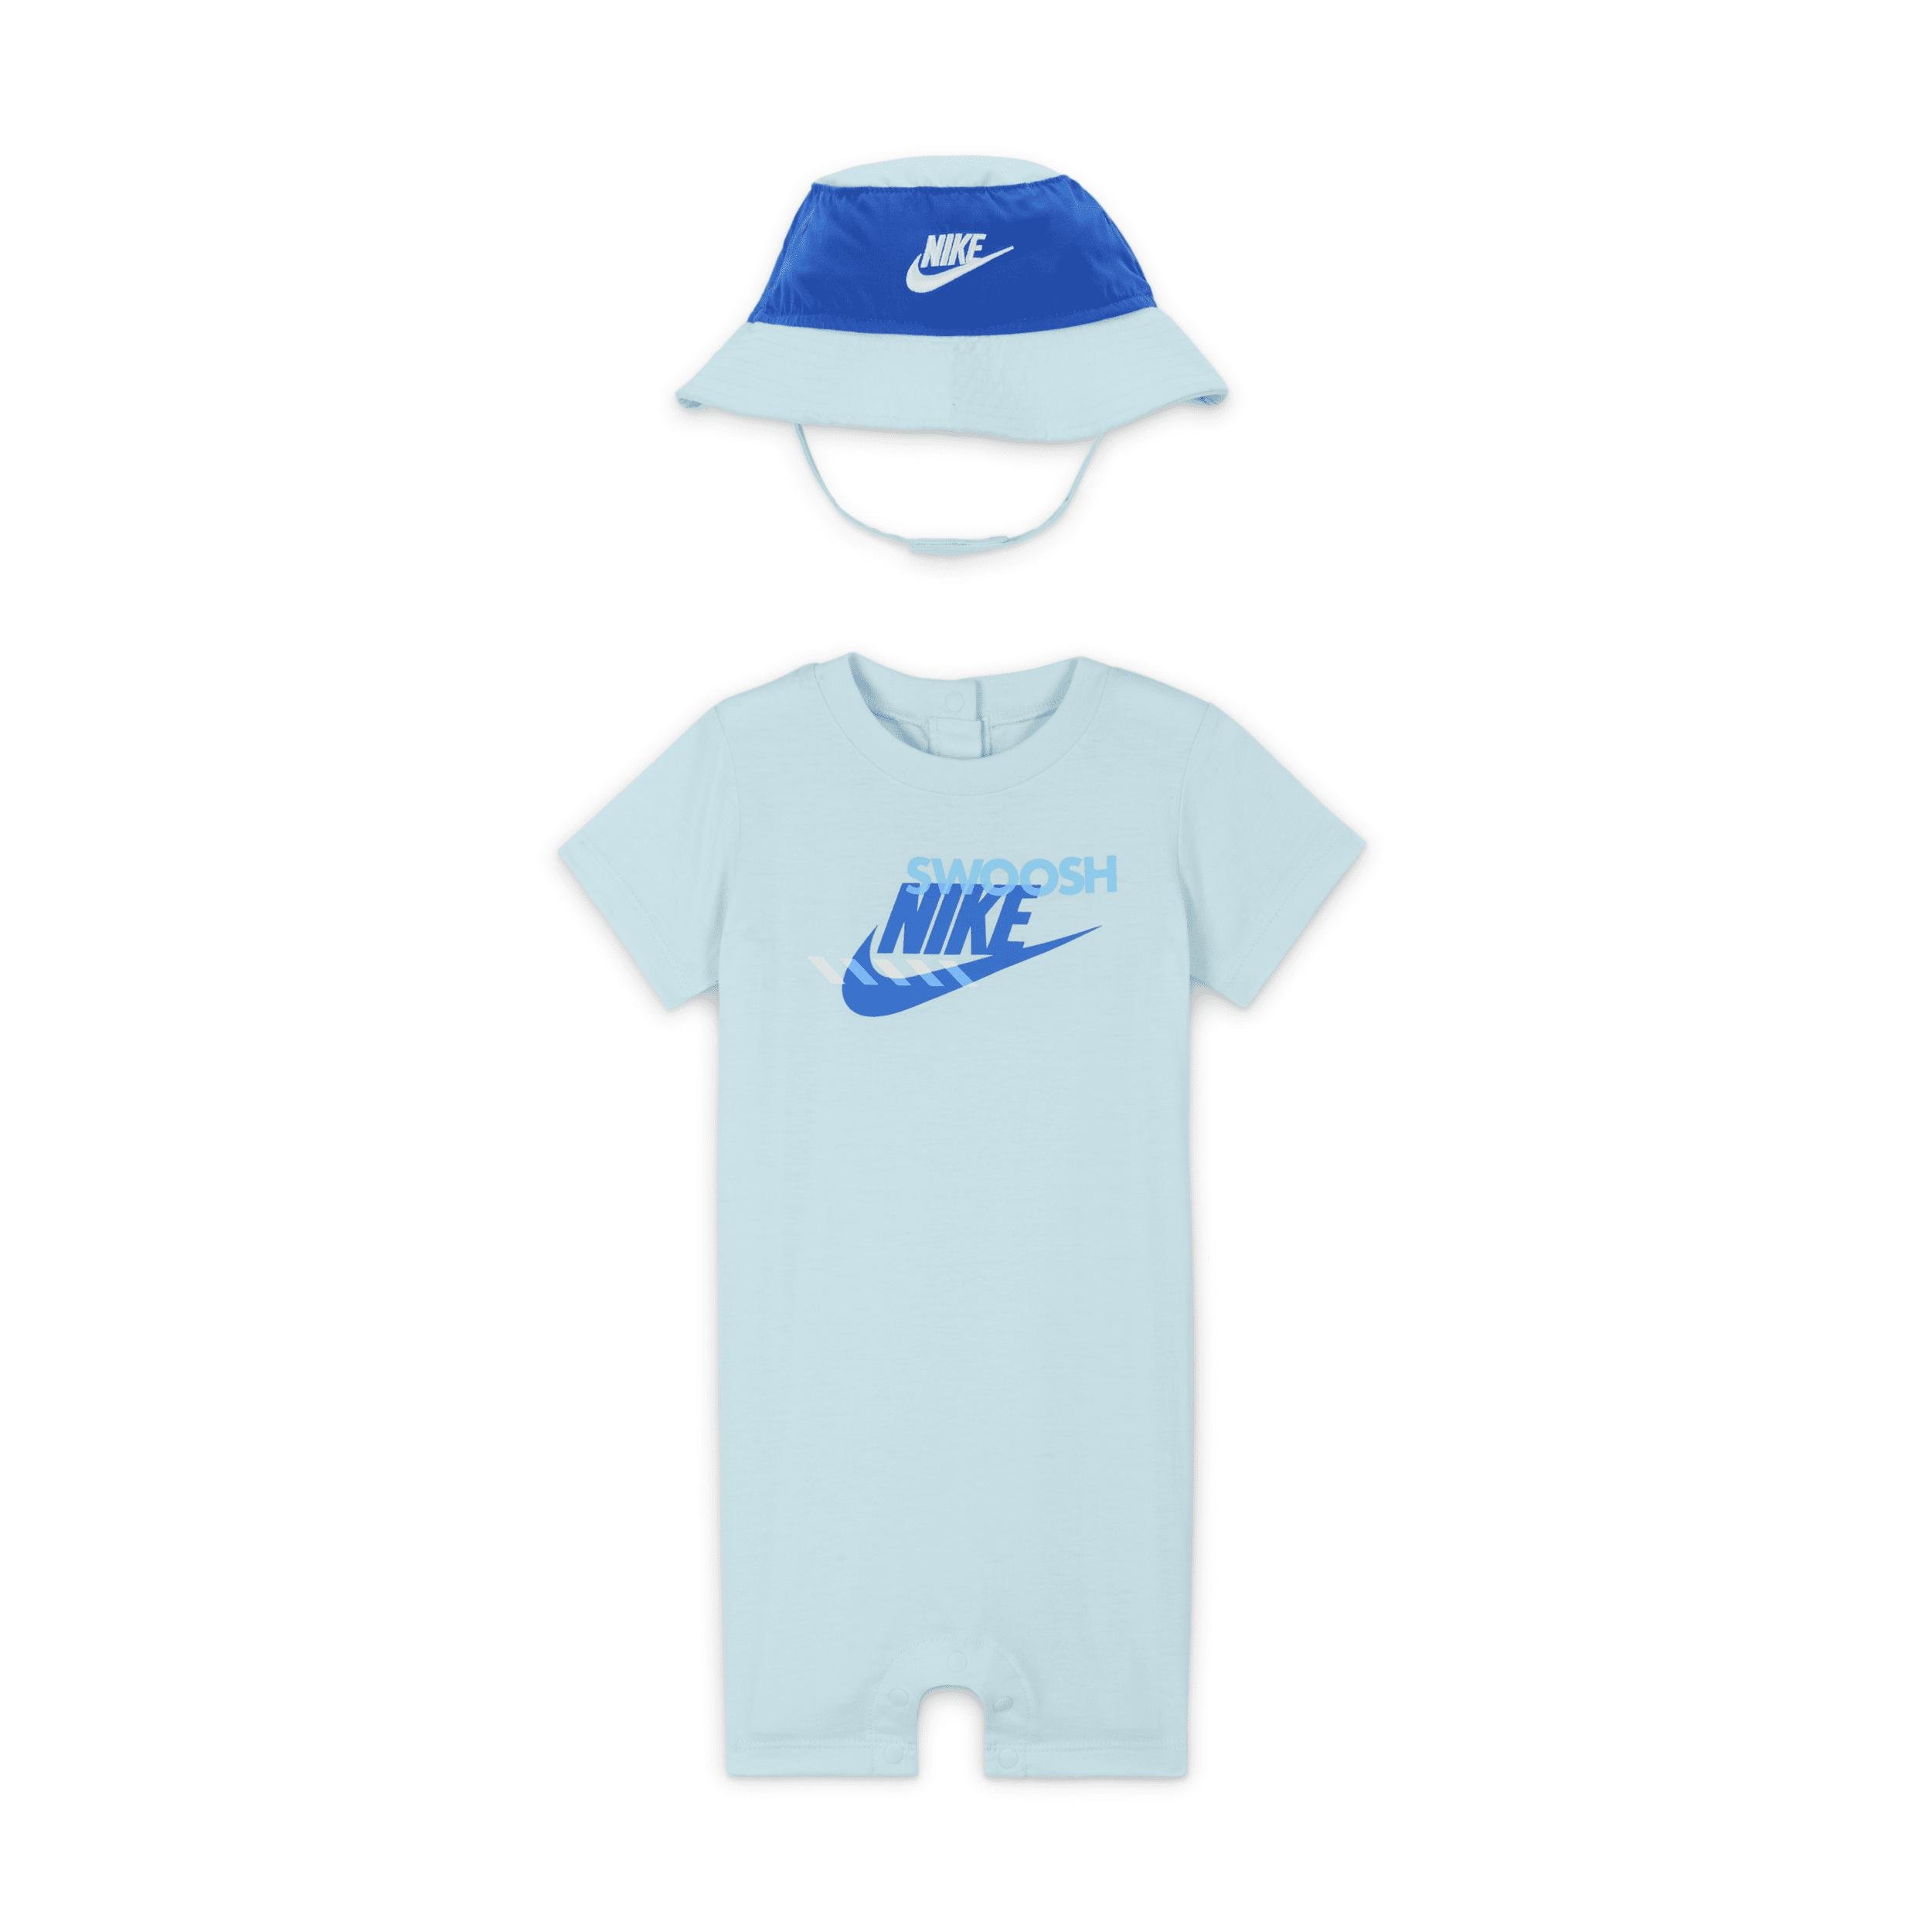 Nike Sportswear PE Baby (12-24M) Romper and Bucket Hat Set by NIKE